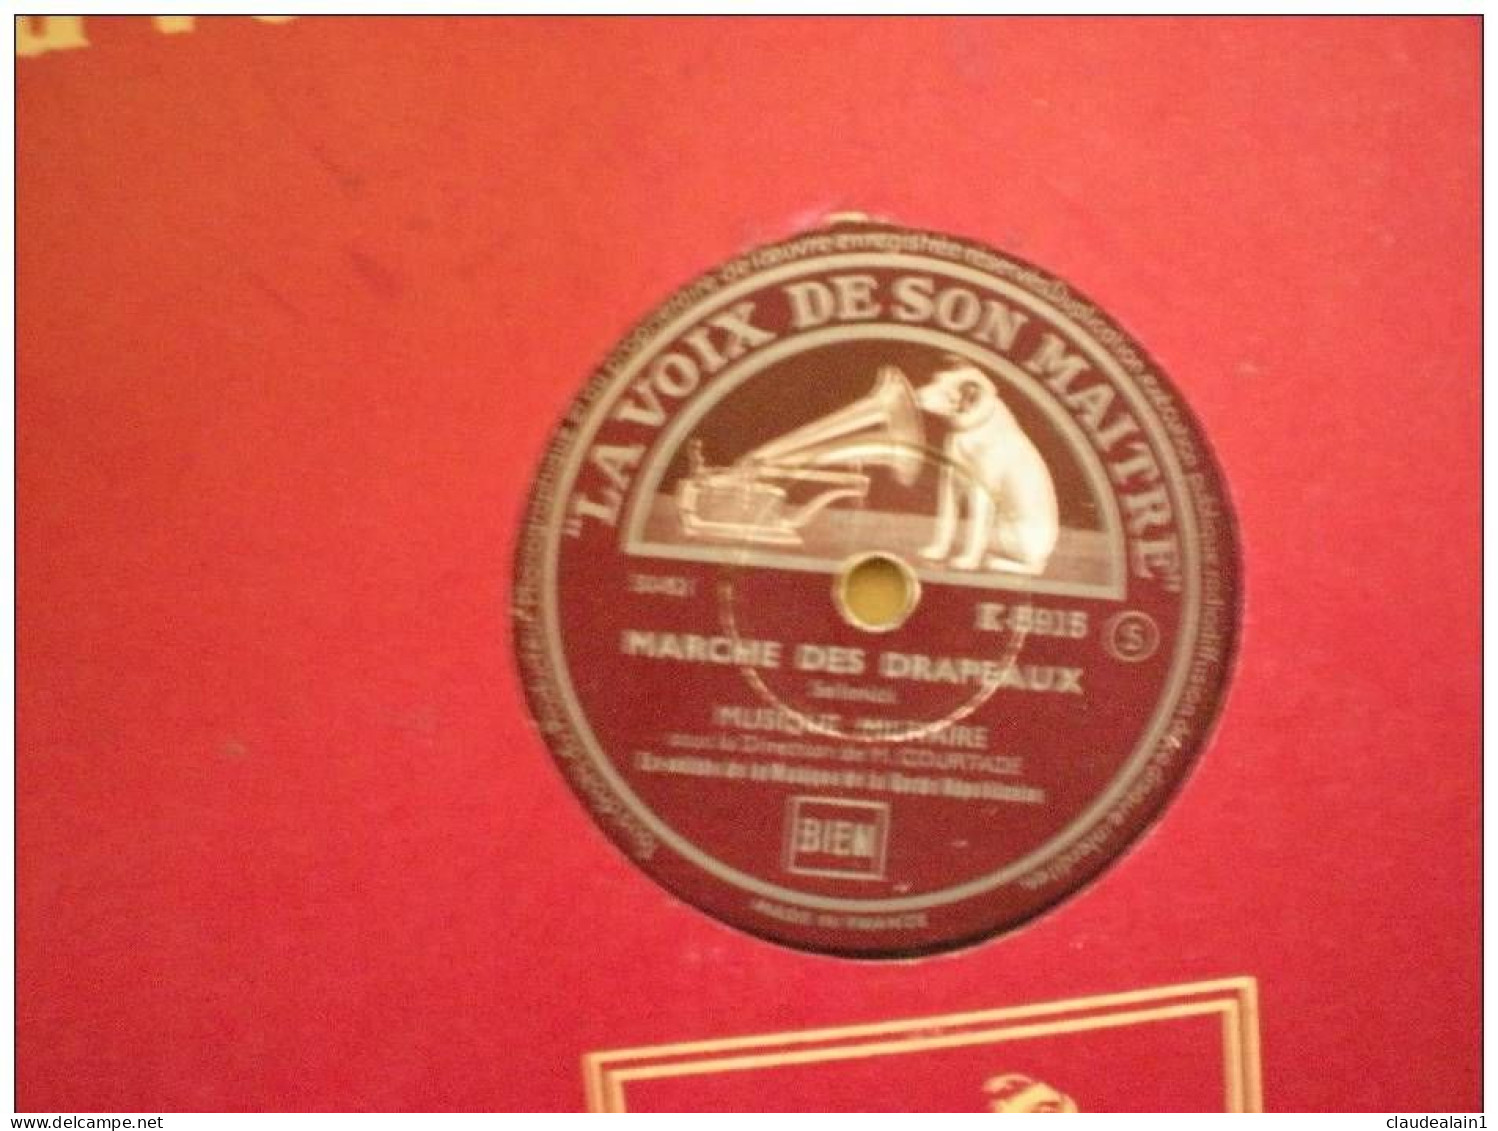 DISQUE LA VOIX DE SON MAITRE VINYLE 78T - MUSIQUE MILITAIRE DE M.COURTADE - MARCHE DES DRAPEAUX - PARIS BELFORT - 78 T - Disques Pour Gramophone